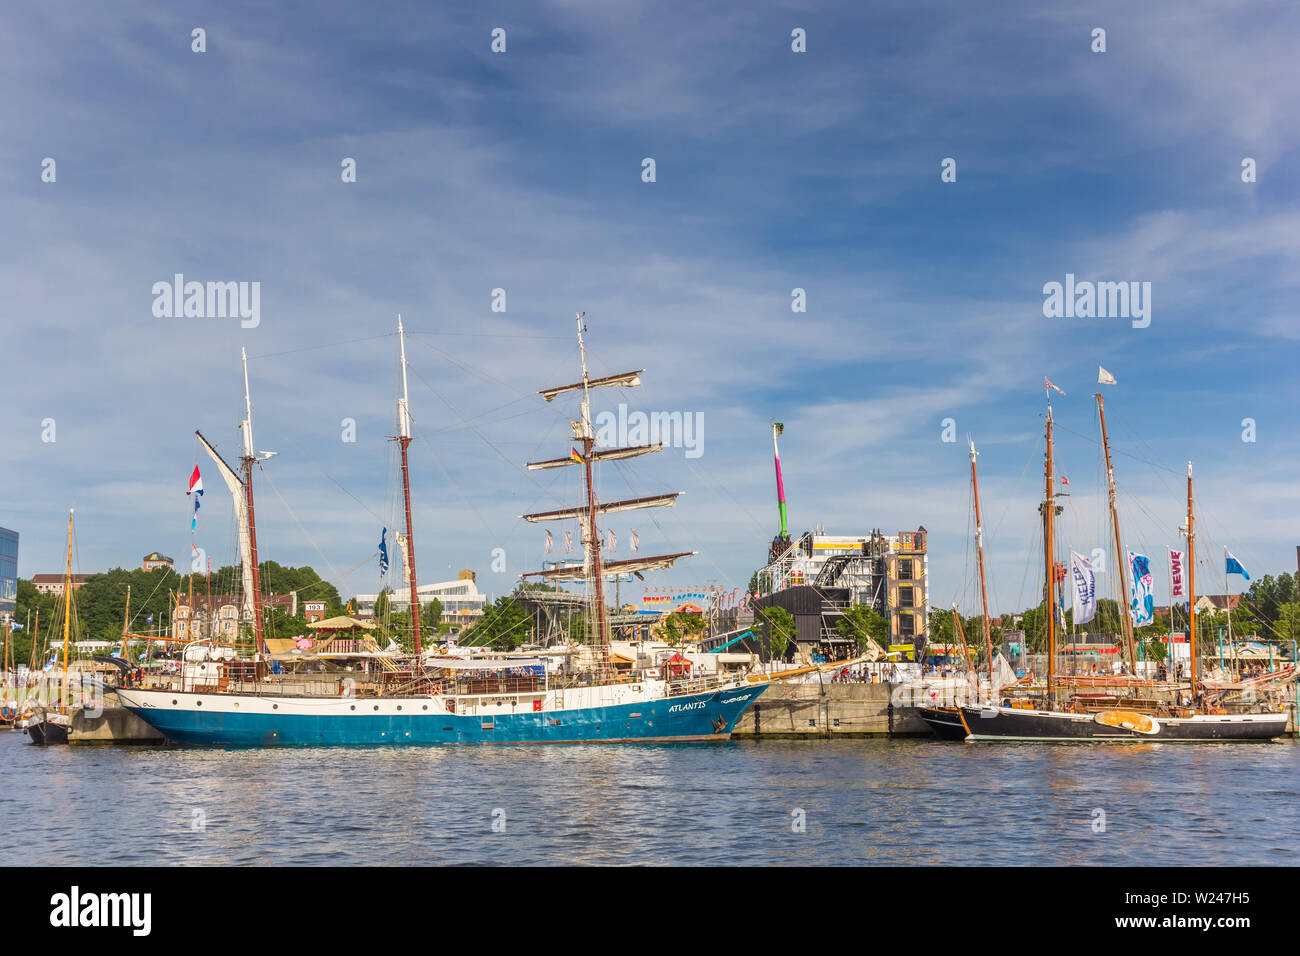 Tall ships at the quay in Kiel, Germany Stock Photo